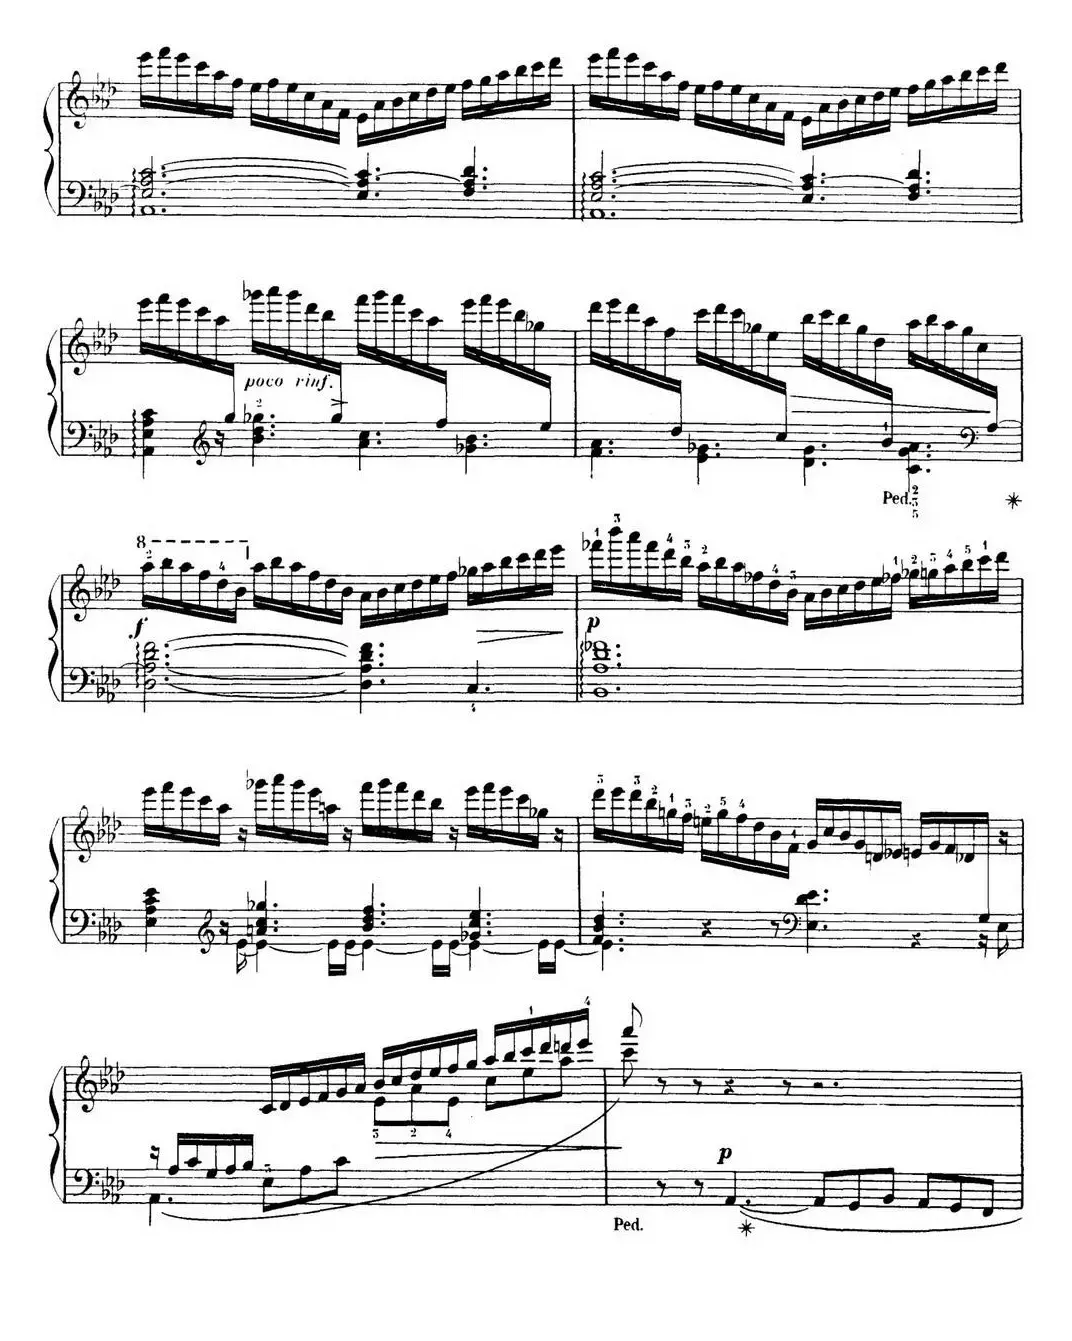 15 Etudes de Virtuosité Op.72 No.11（十五首钢琴练习曲之十一）